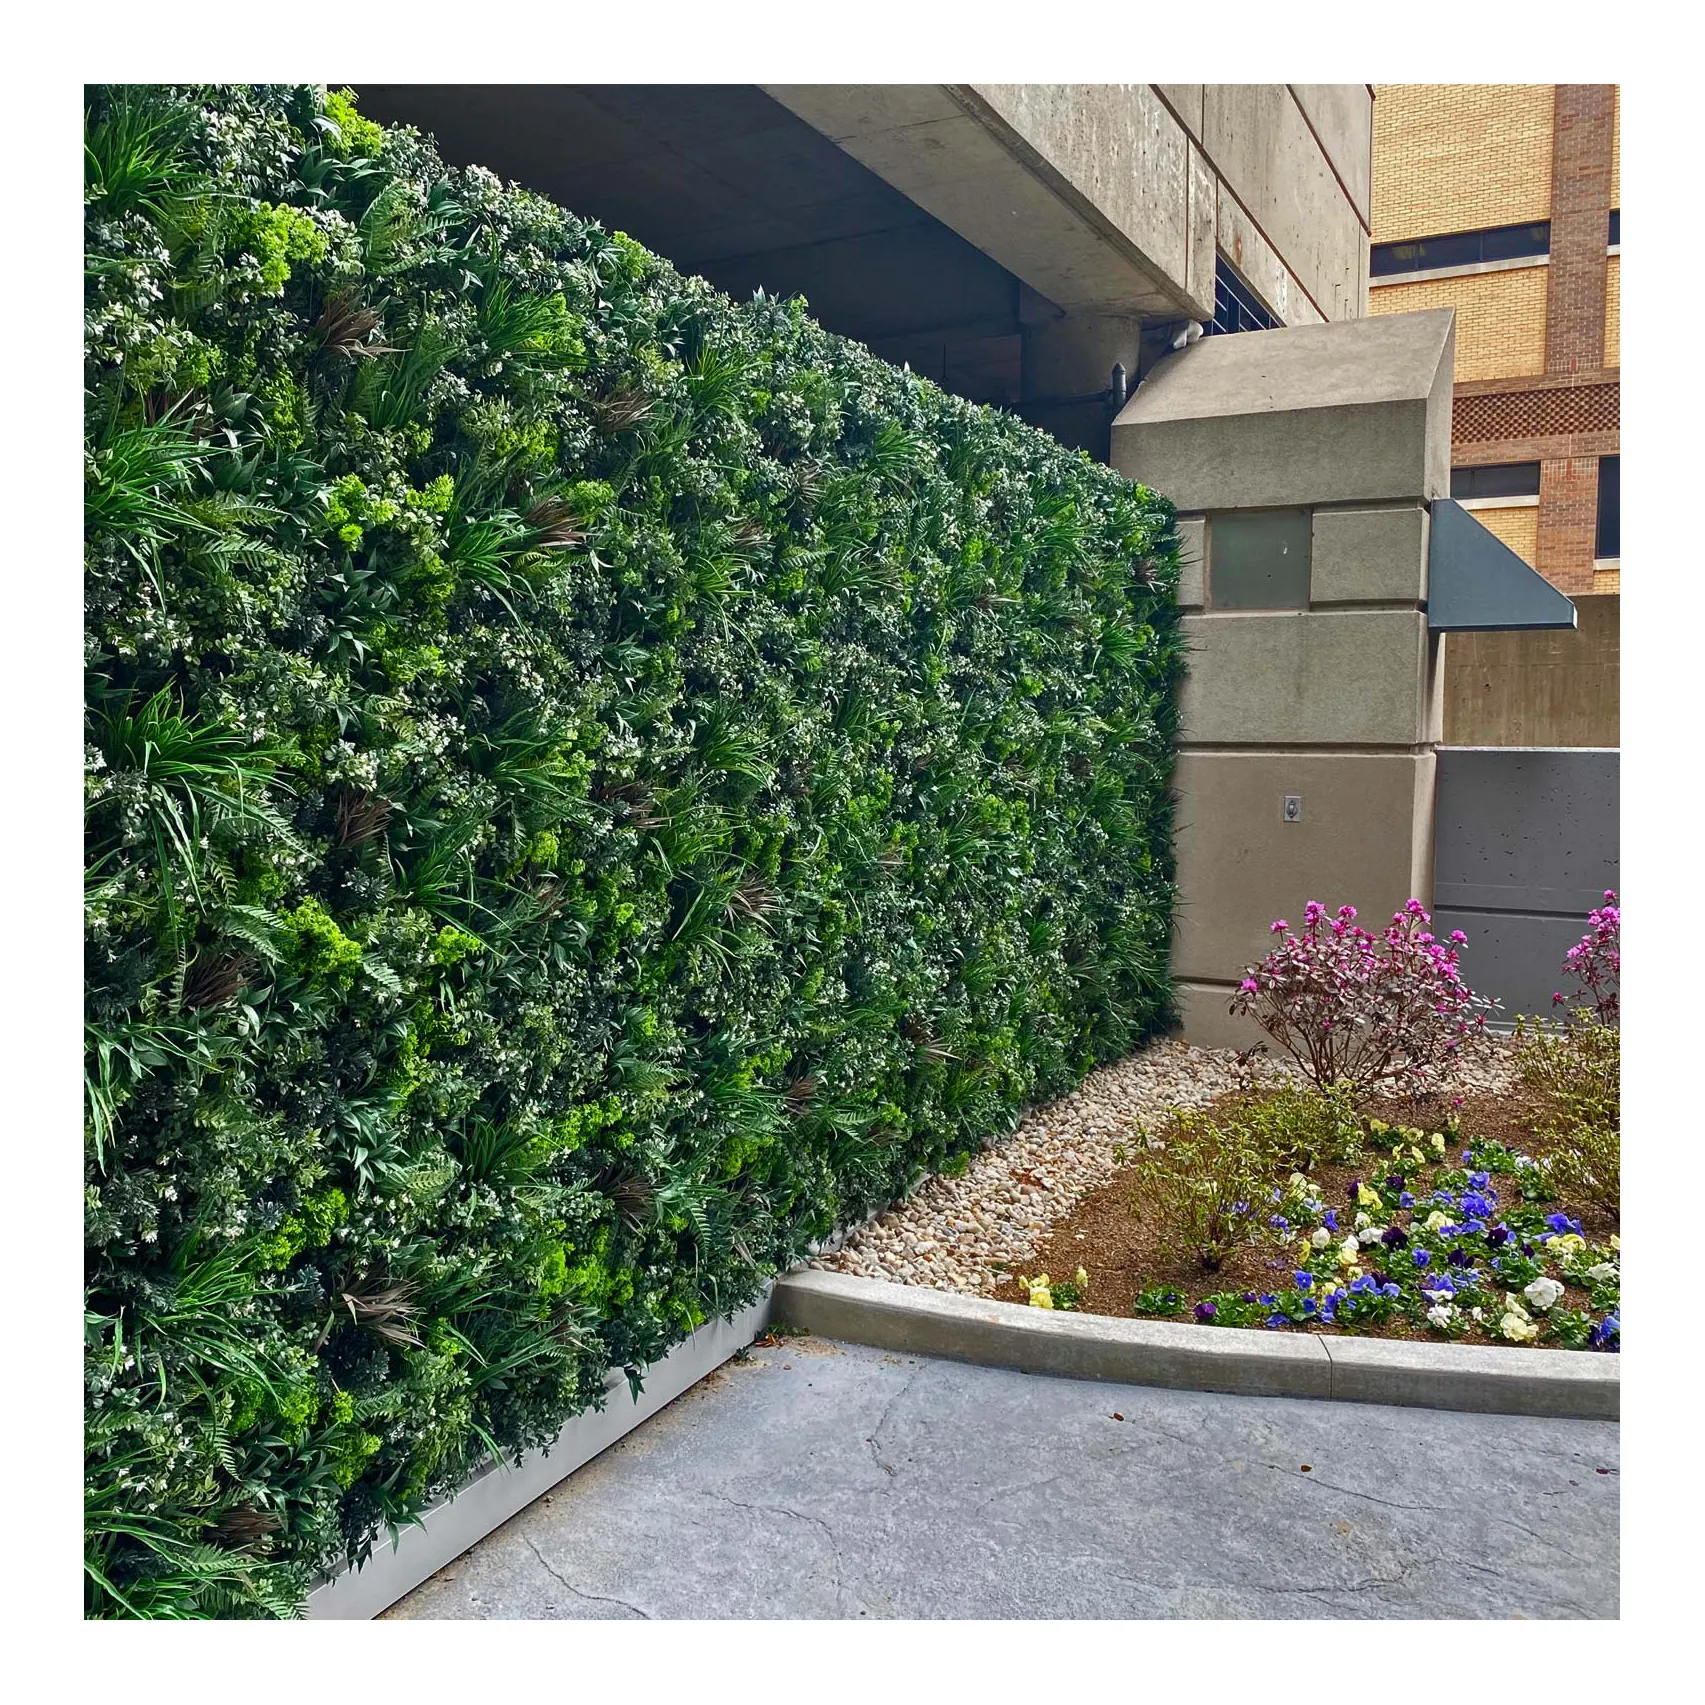 Linwoo tanaman rumput hijau tahan Uv, dinding untuk dekorasi rumah tanaman hijau pagar rumput buatan untuk dinding